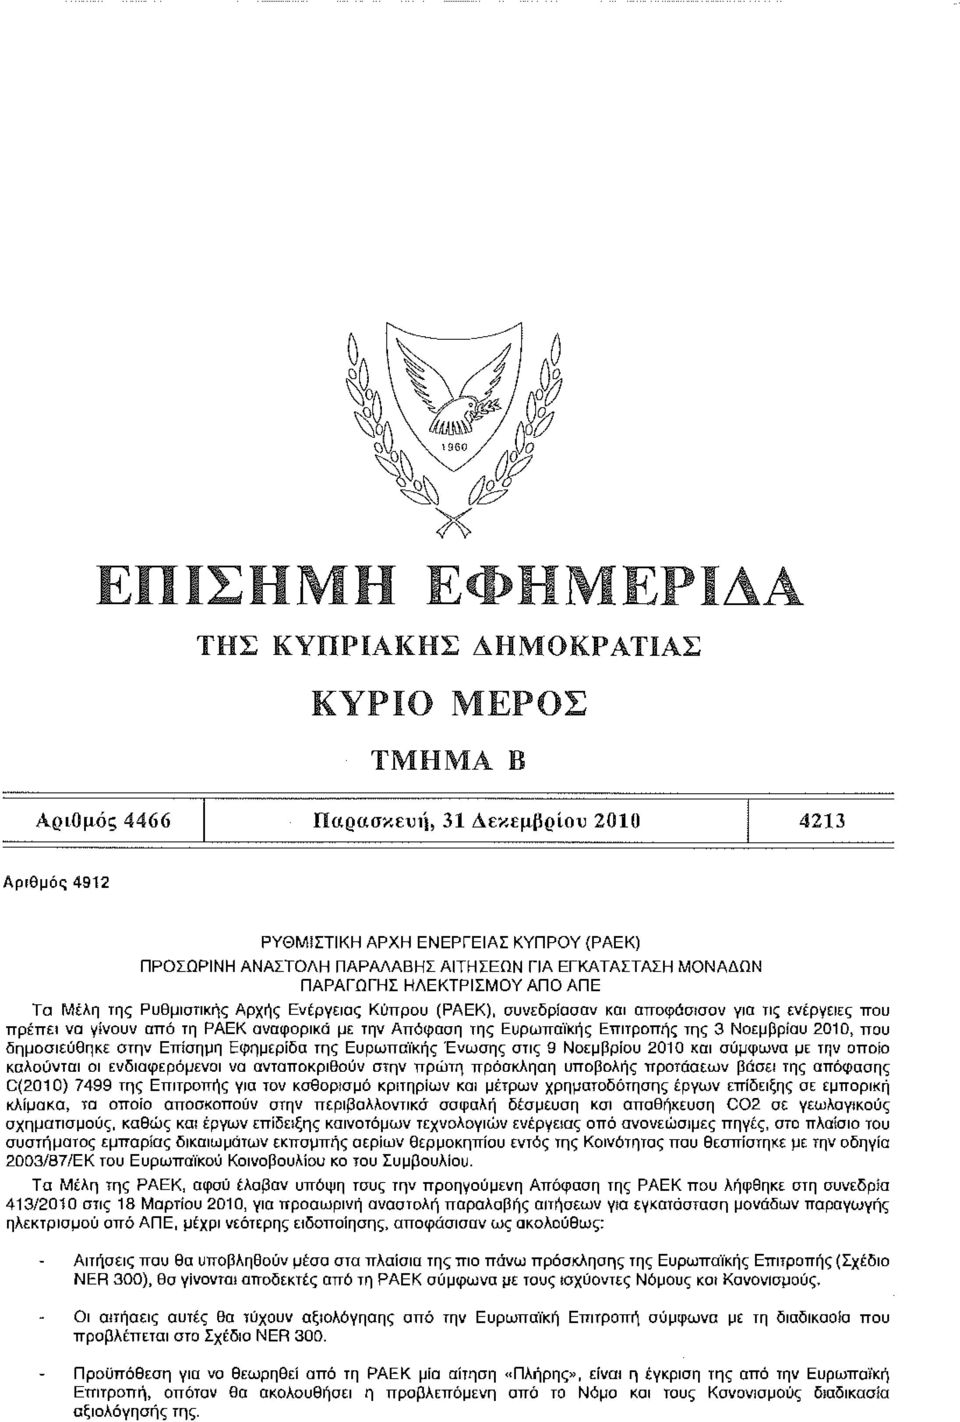 2010, που δημοσιεύθηκε στην Επίσημη Εφημερίδα της Ευρωπαϊκής Ένωσης στις 9 Νοεμβρίου 2010 και σύμφωνα με την οποία καλούνται οι Ενδιαφερόμενοι να ανταποκριθούν στην πρώτη πρόσκληση υποβολής προτάσεων